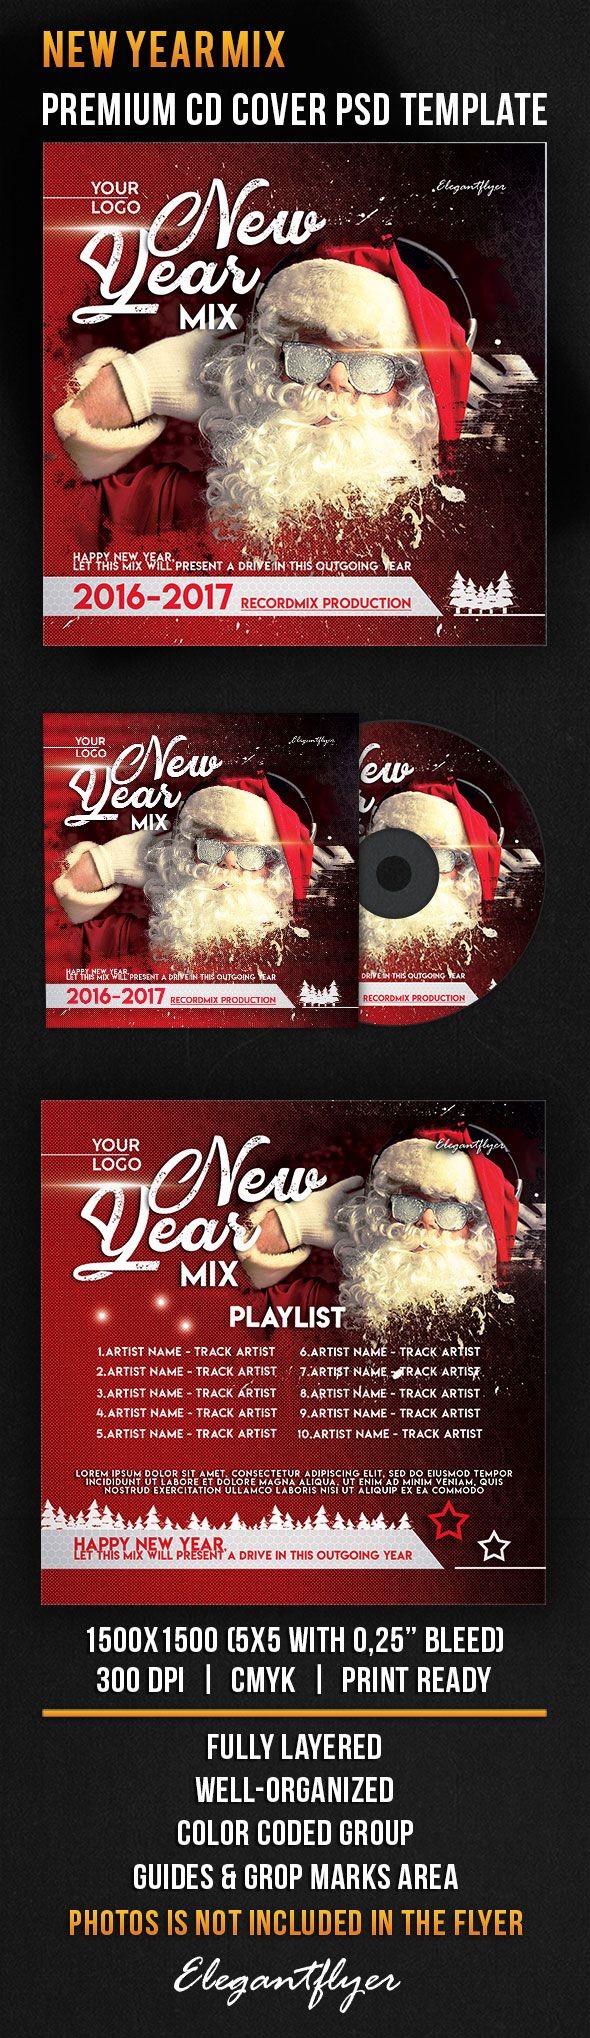 New Year Mix by ElegantFlyer